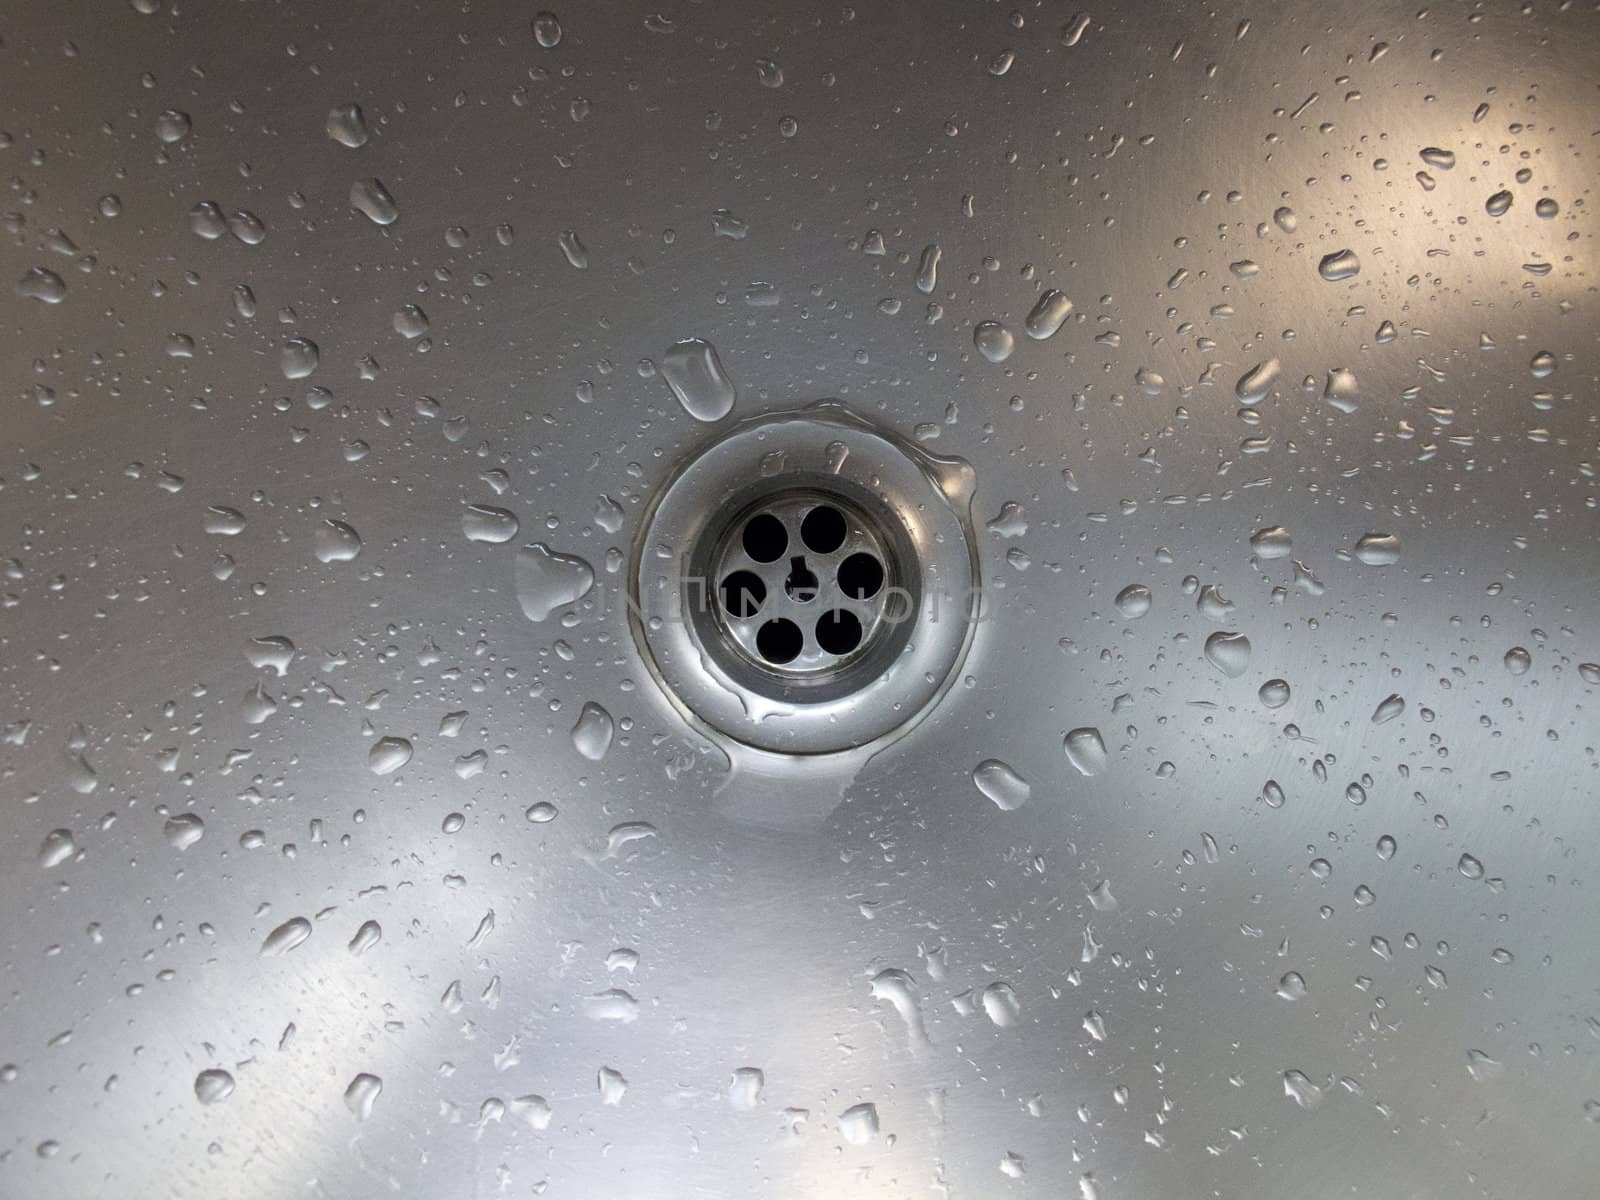 A drain of aluminium basin with drops of water.